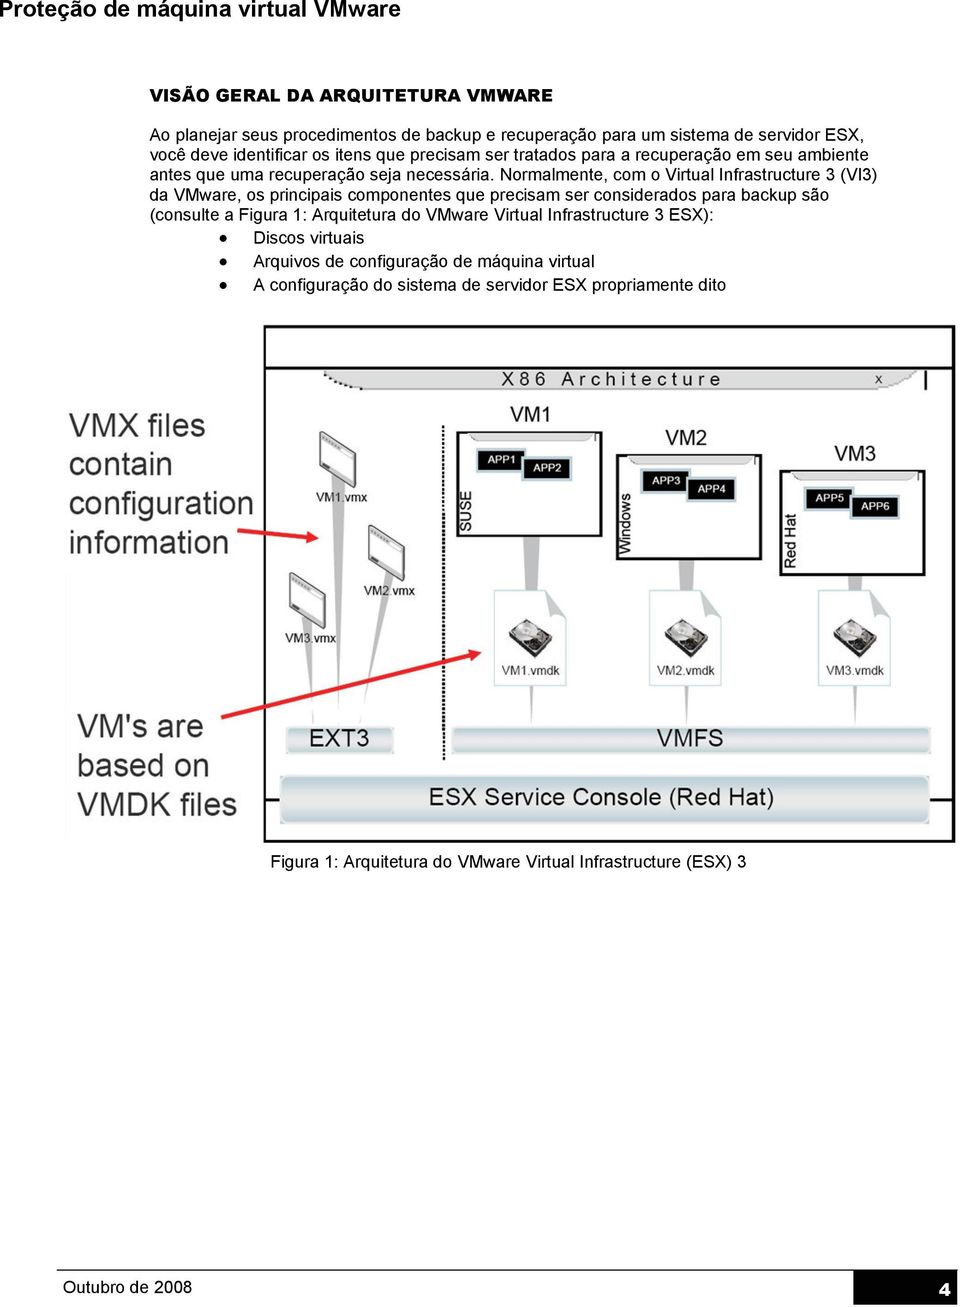 Normalmente, com o Virtual Infrastructure 3 (VI3) da VMware, os principais componentes que precisam ser considerados para backup são (consulte a Figura 1: